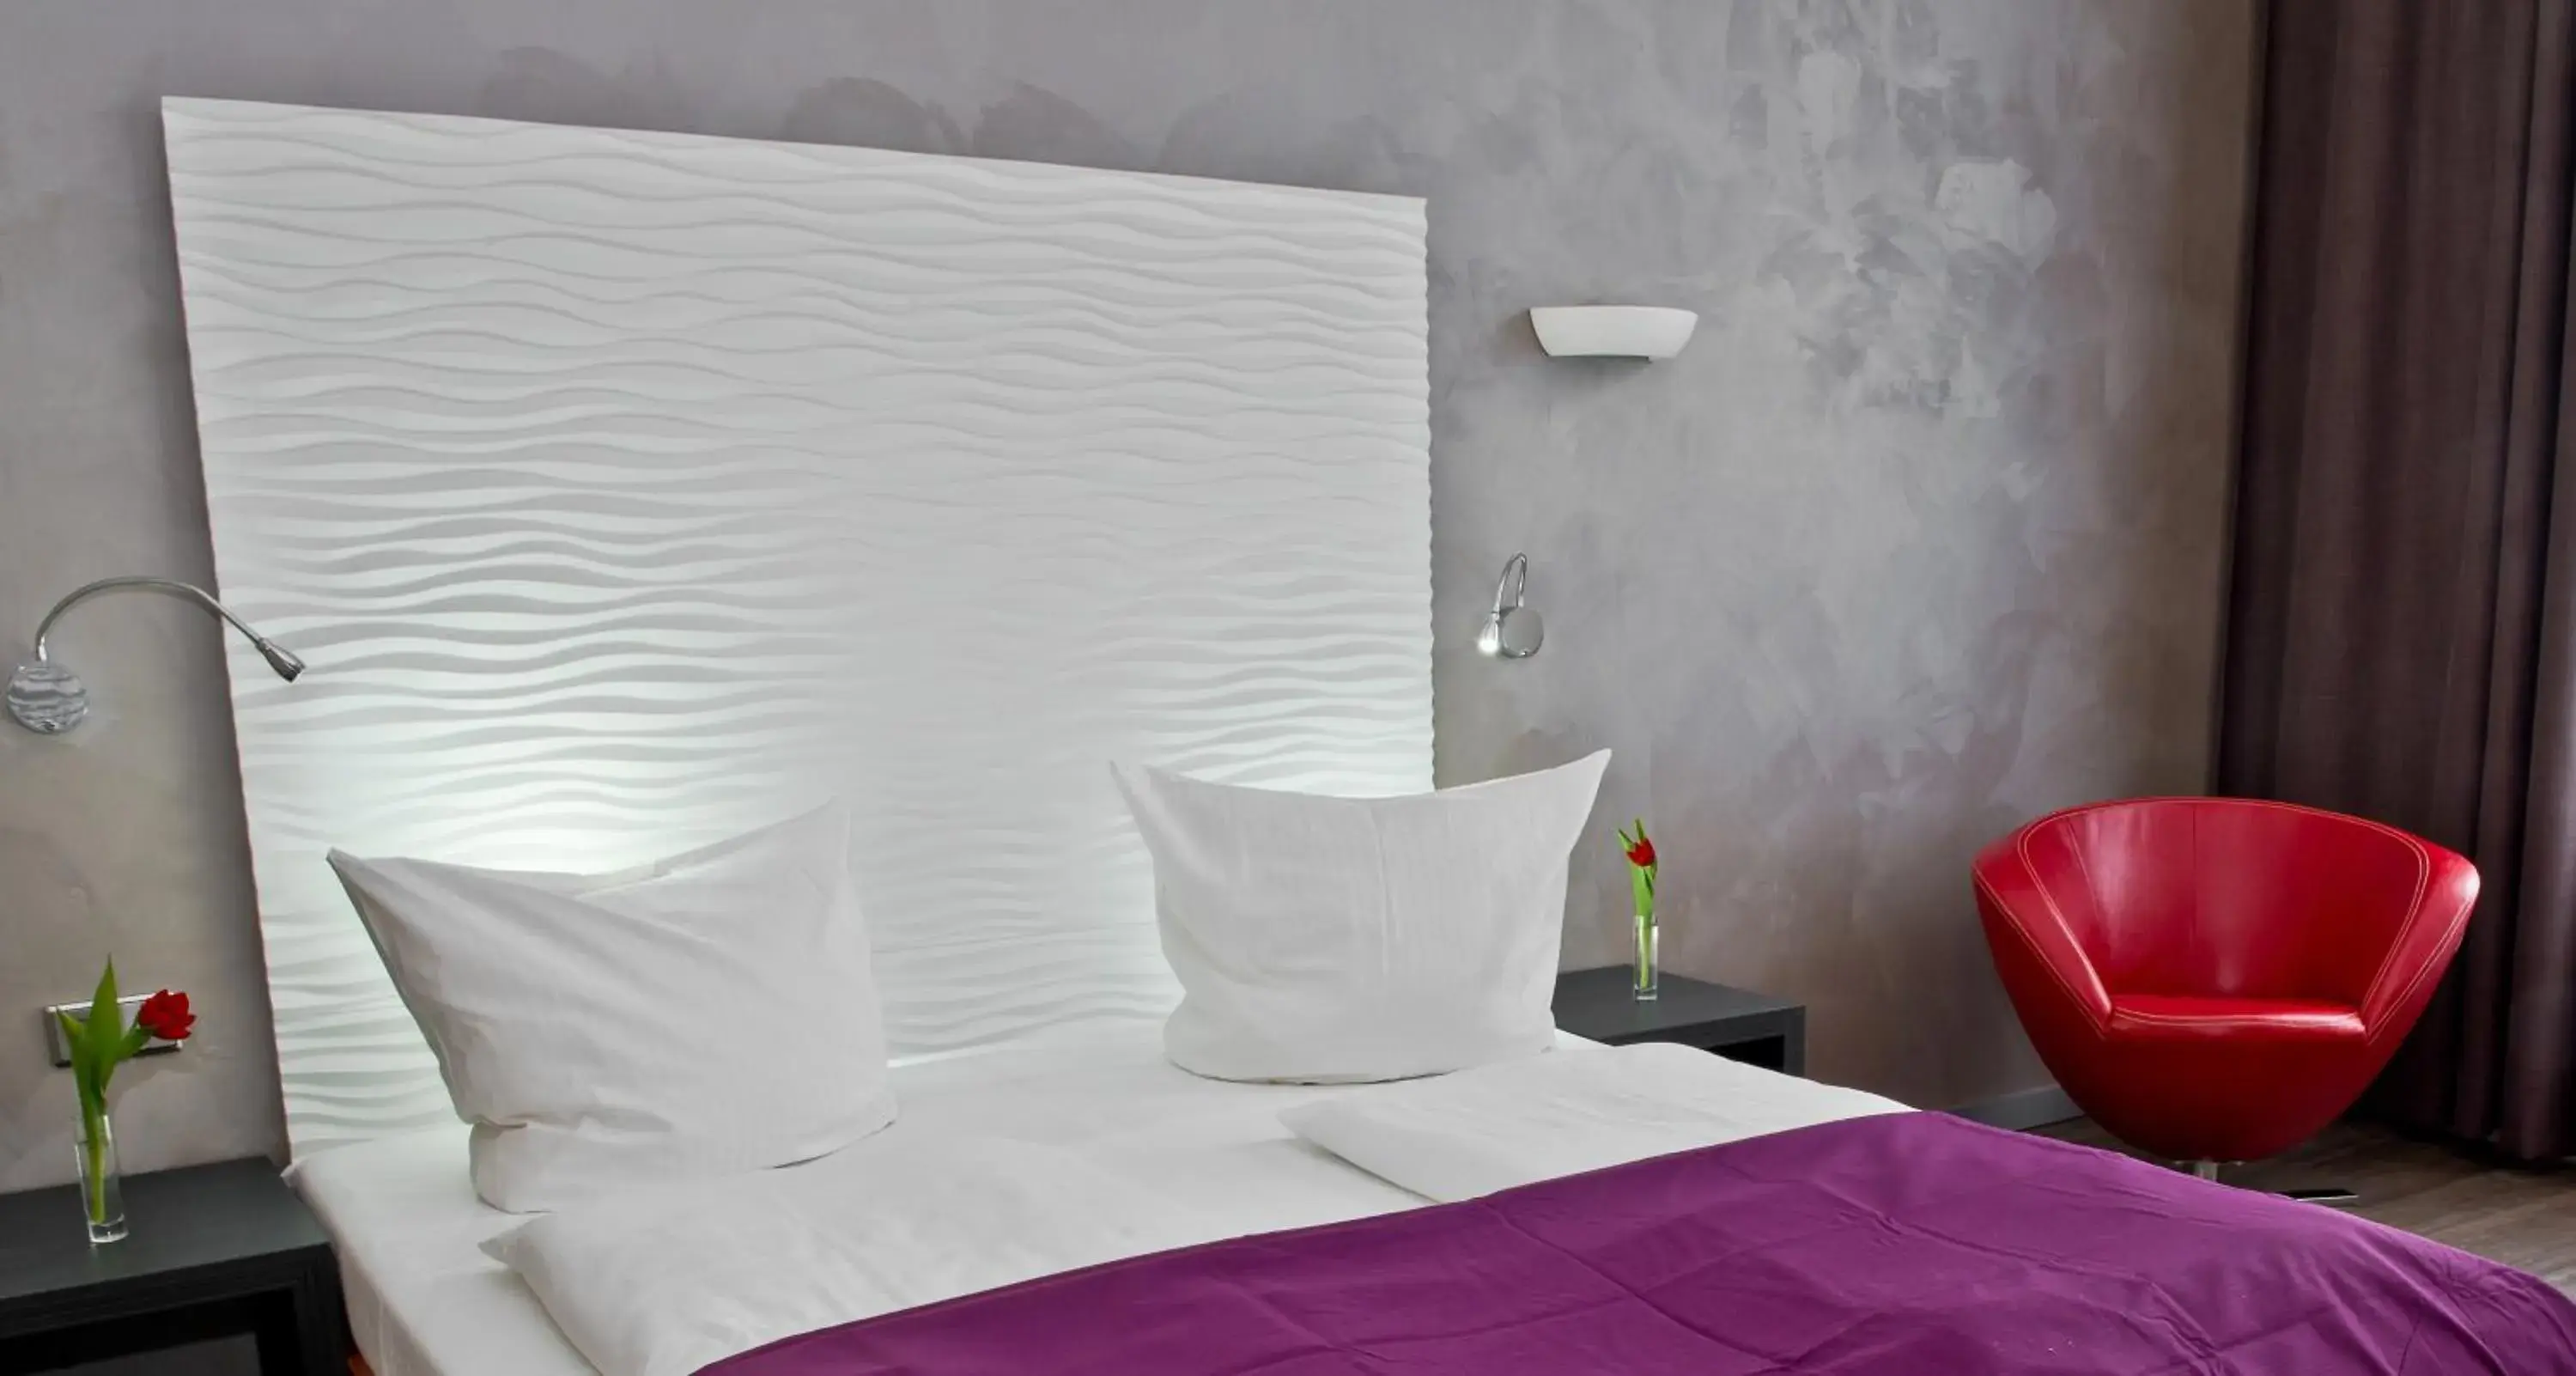 Bed in Artim Hotel